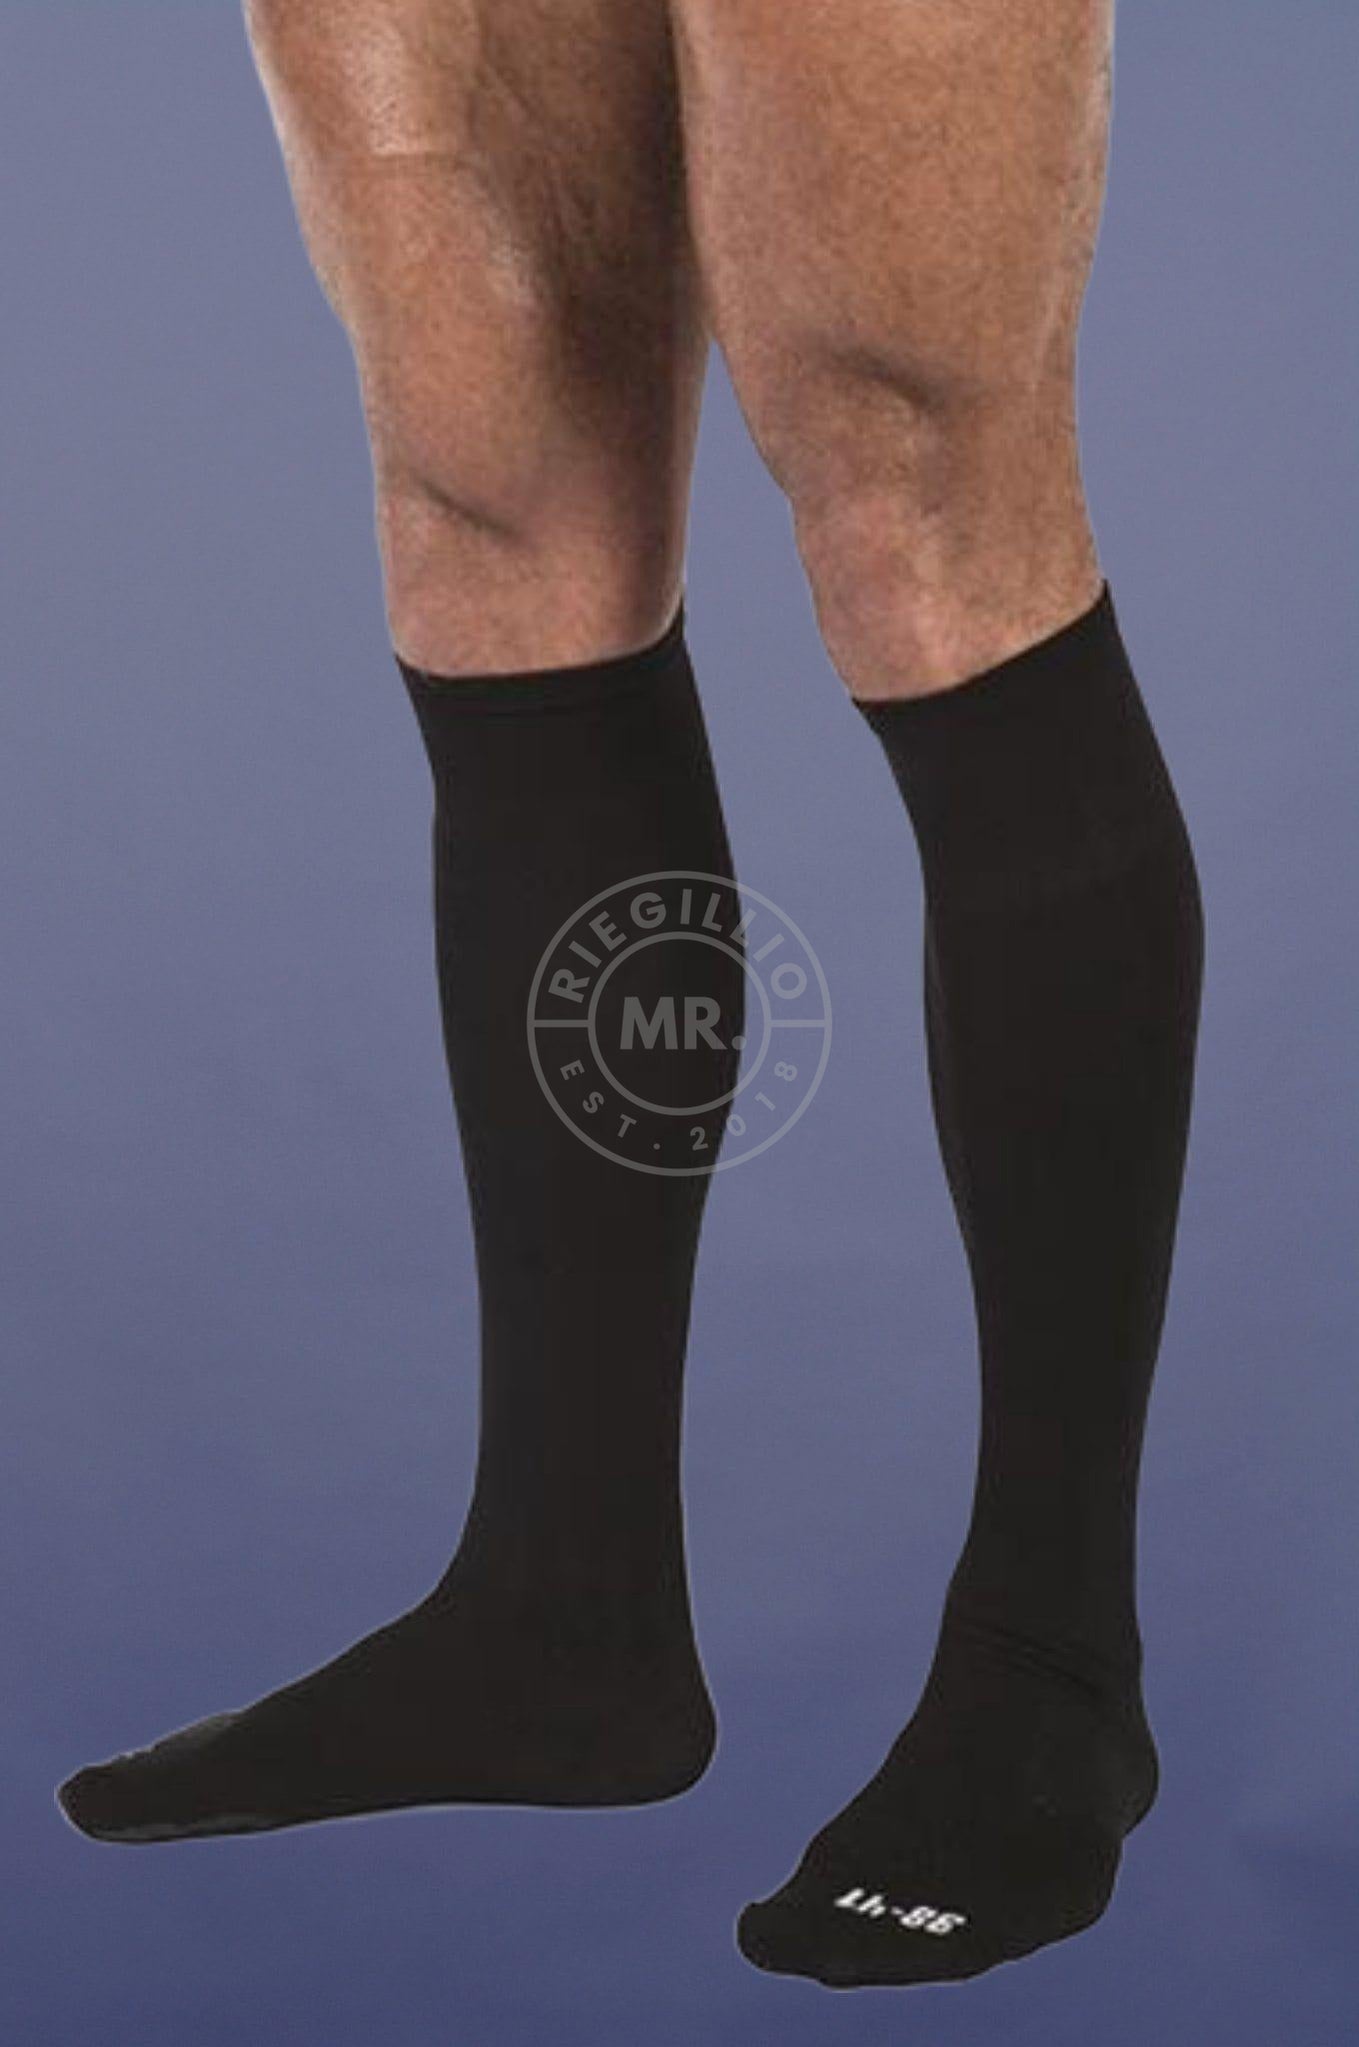 Football Socks Black at MR. Riegillio